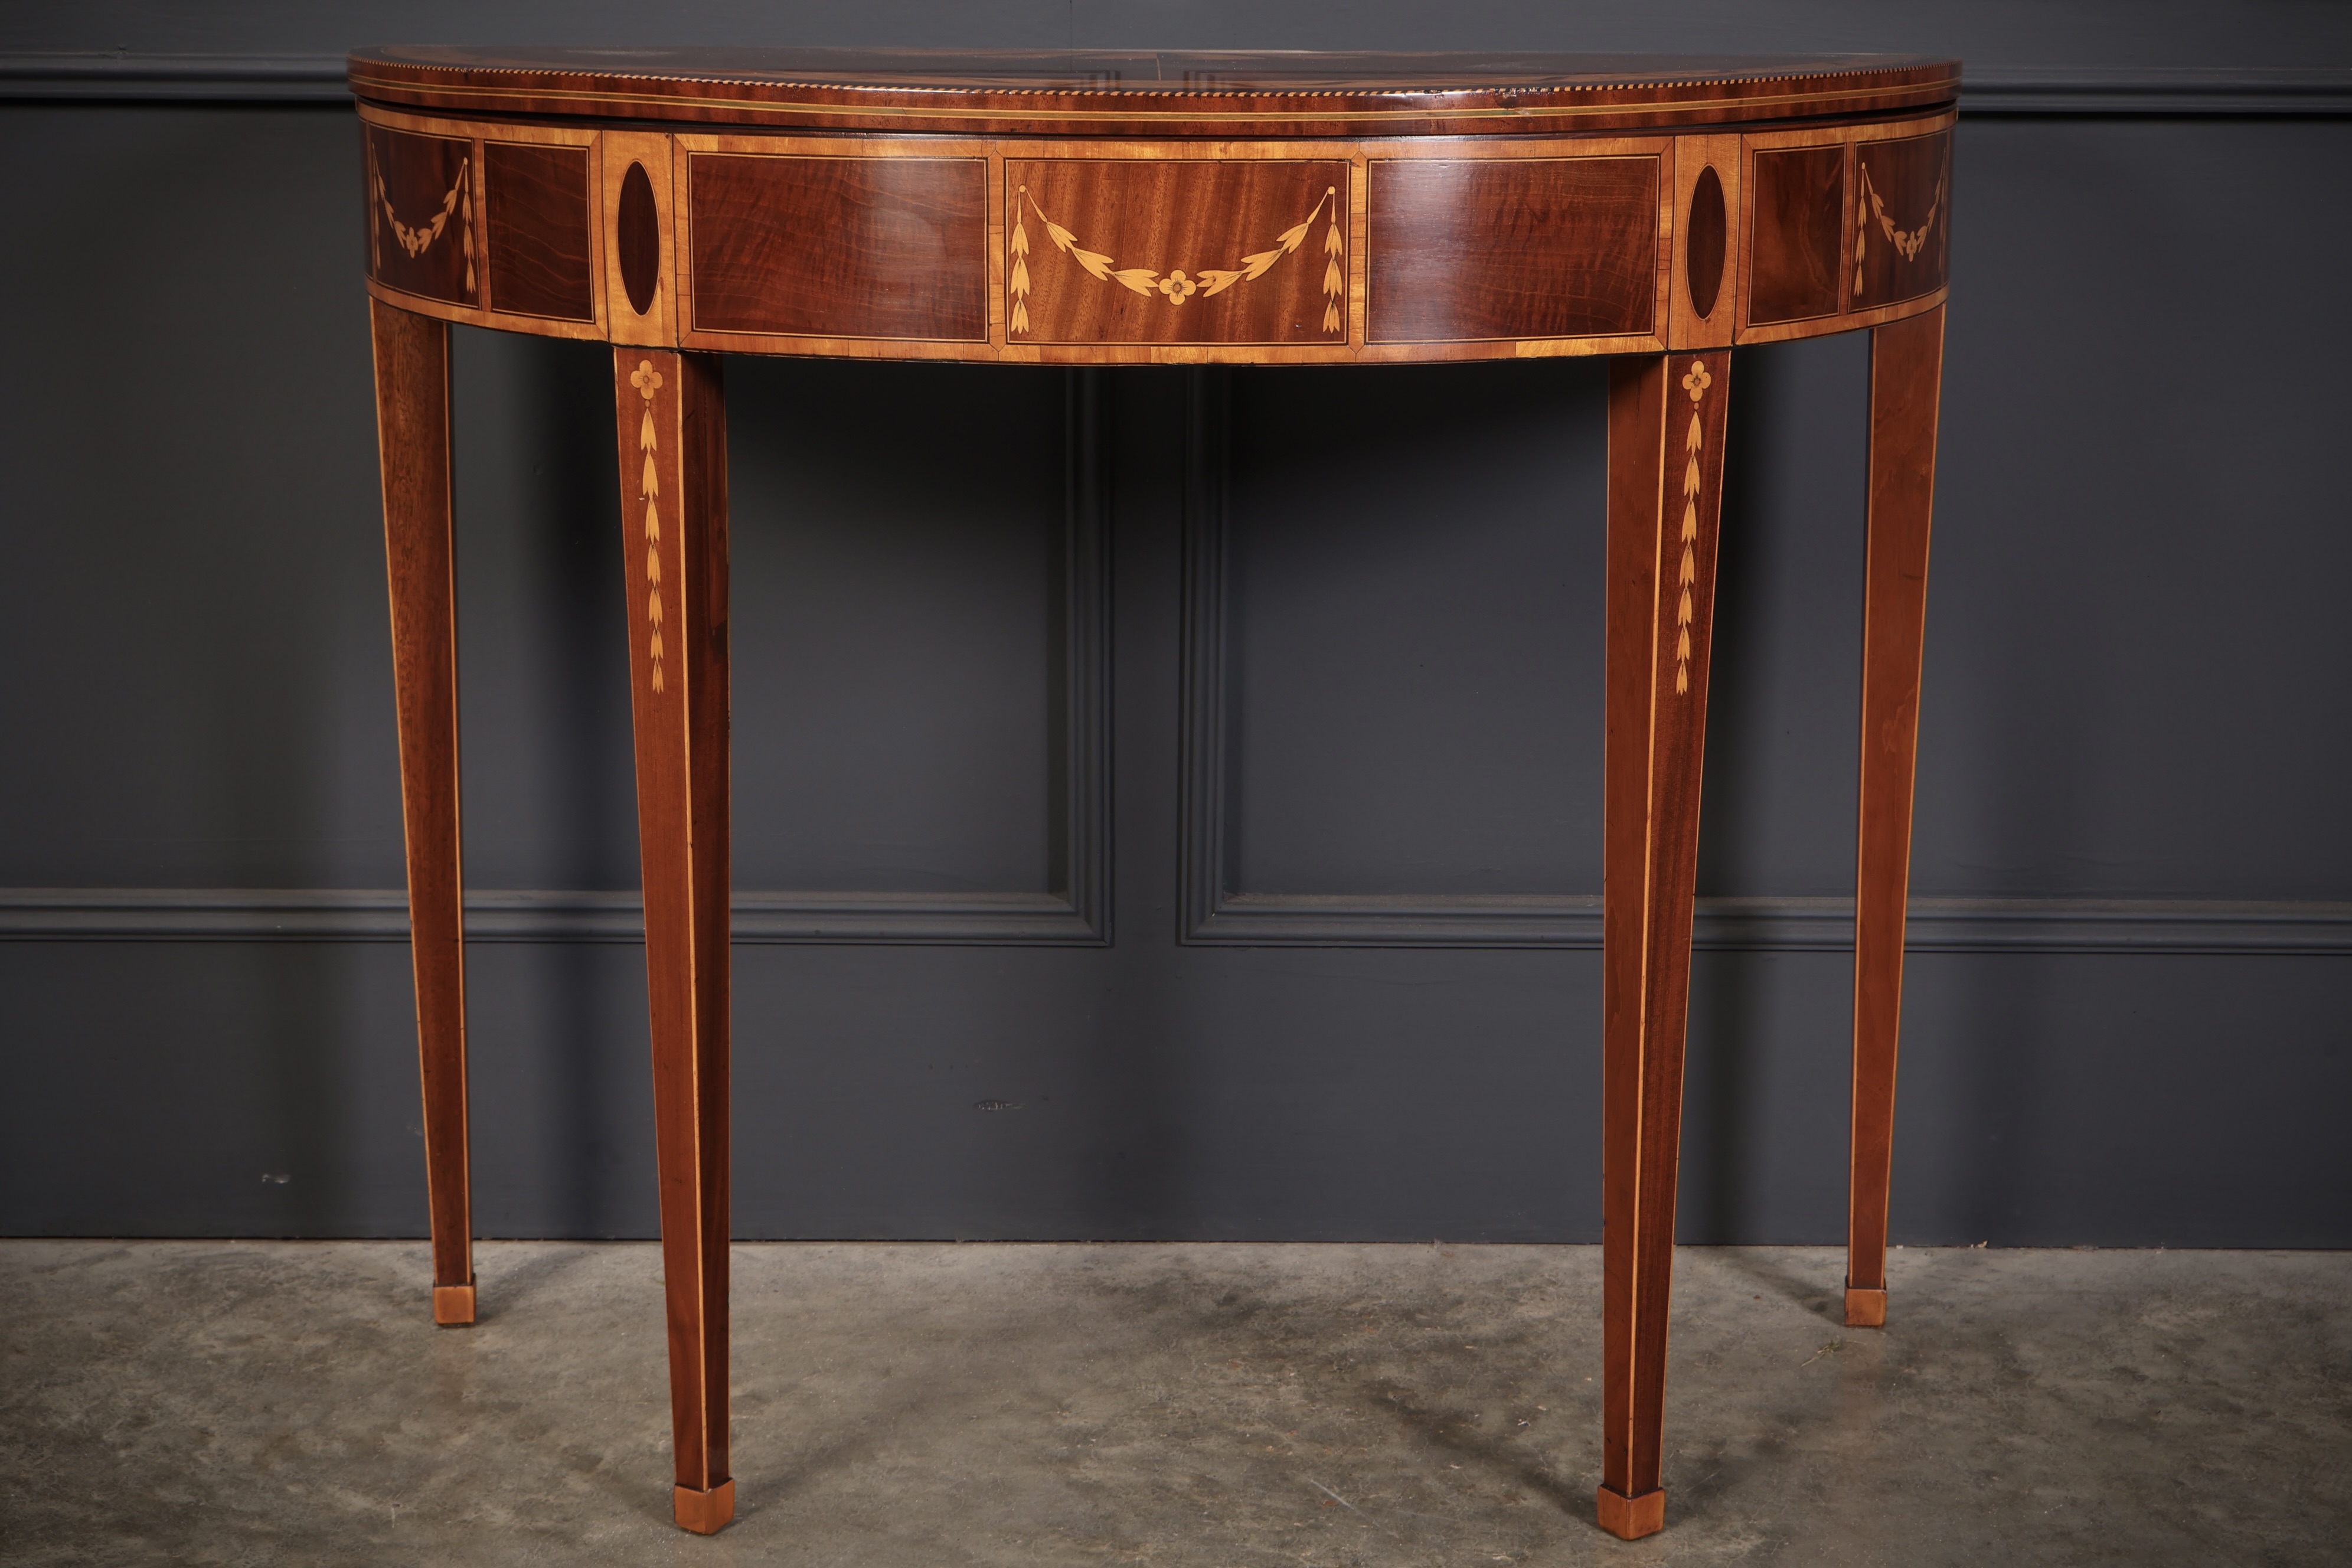 Rare 18th Century Marquetry Inlaid Tea Table 18th century Antique Furniture 9